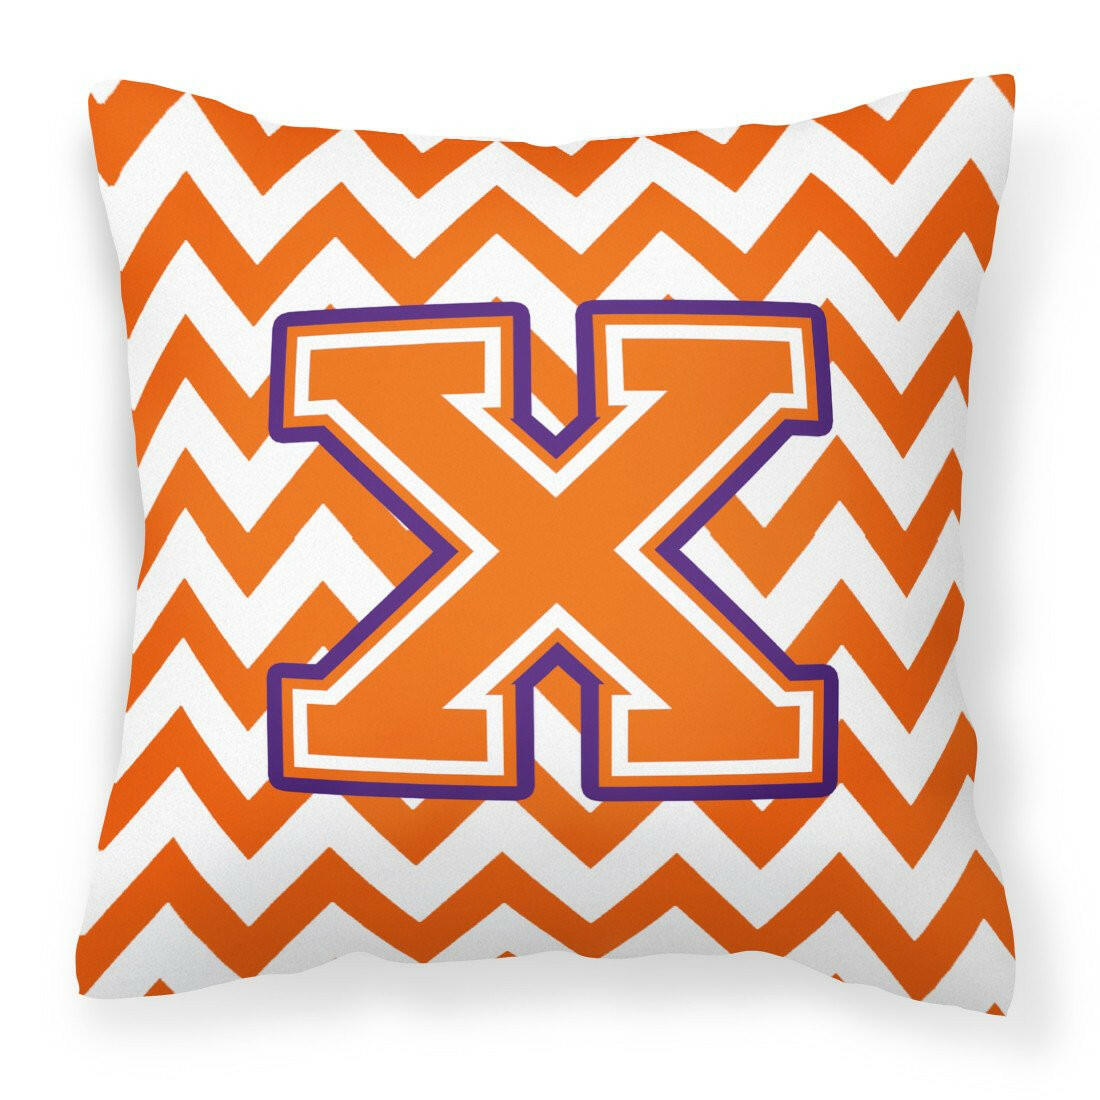 Letter X Chevron Orange and Regalia Fabric Decorative Pillow CJ1062-XPW1414 by Caroline's Treasures